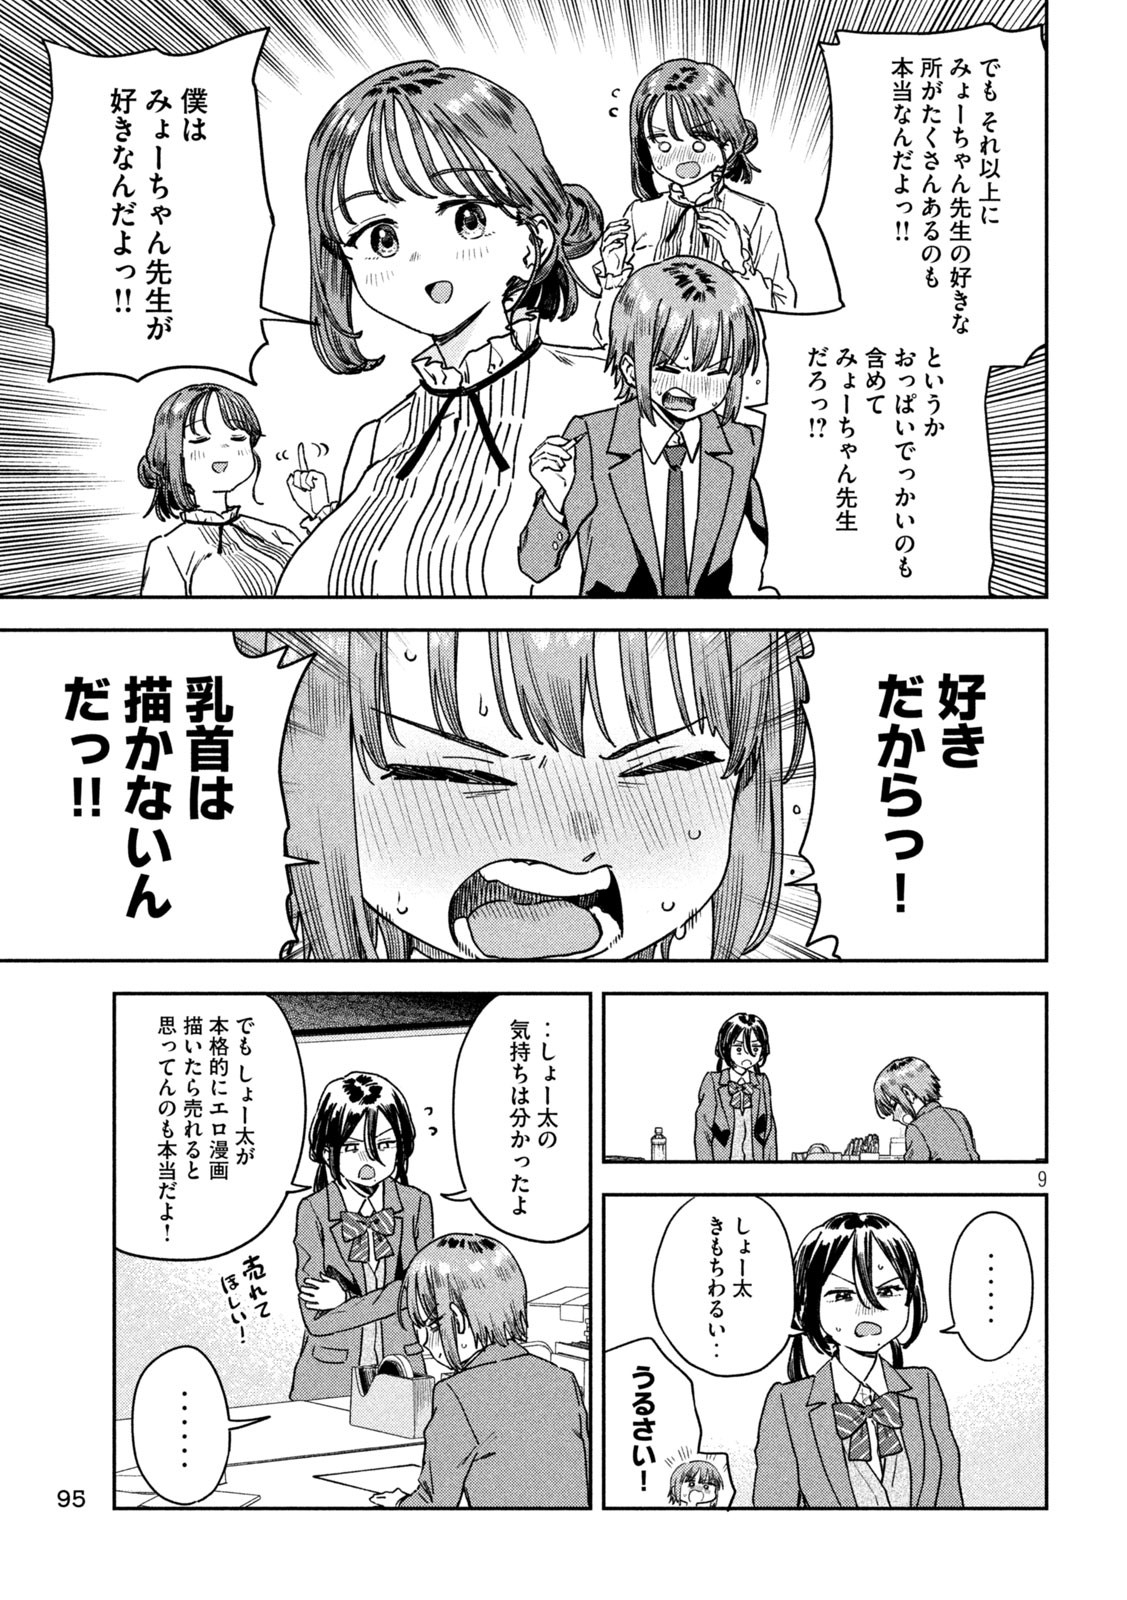 Myo-chan Sensei wa Kaku Katariki - Chapter 40 - Page 9